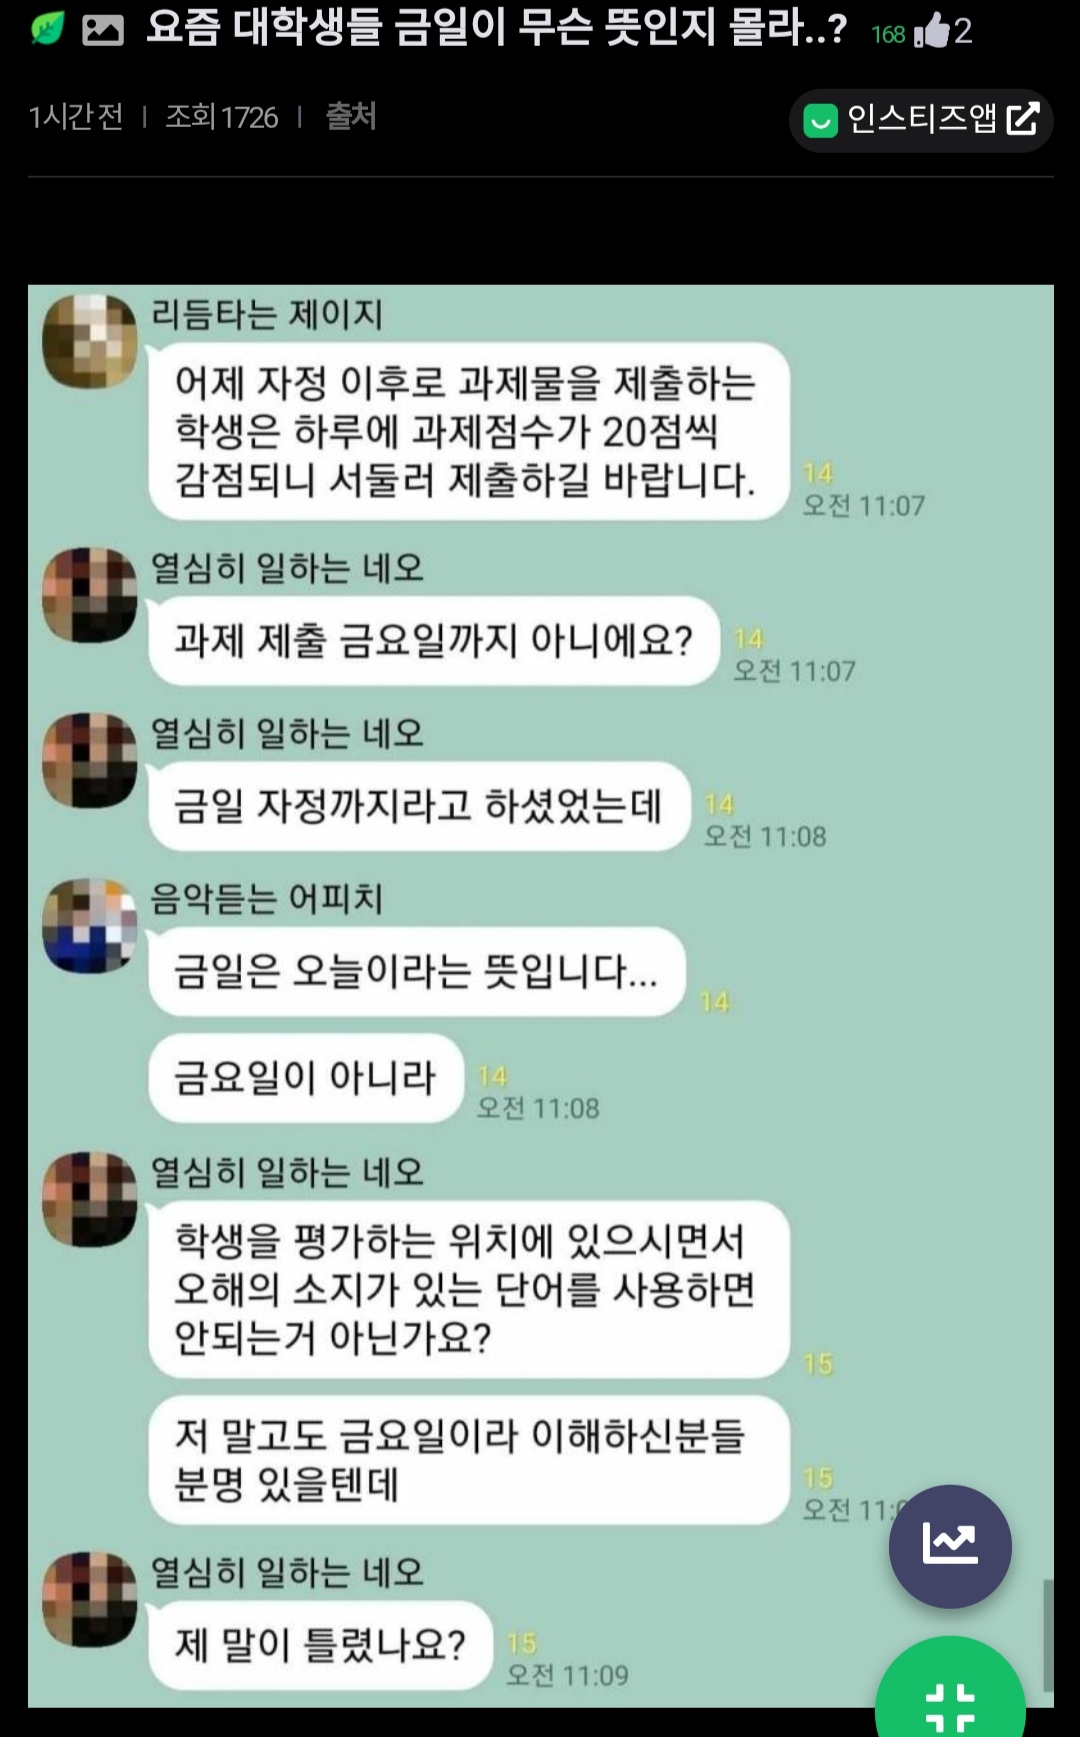 ""요즘 대학생들 금일이 뭔뜻인지 몰라??"".jpg